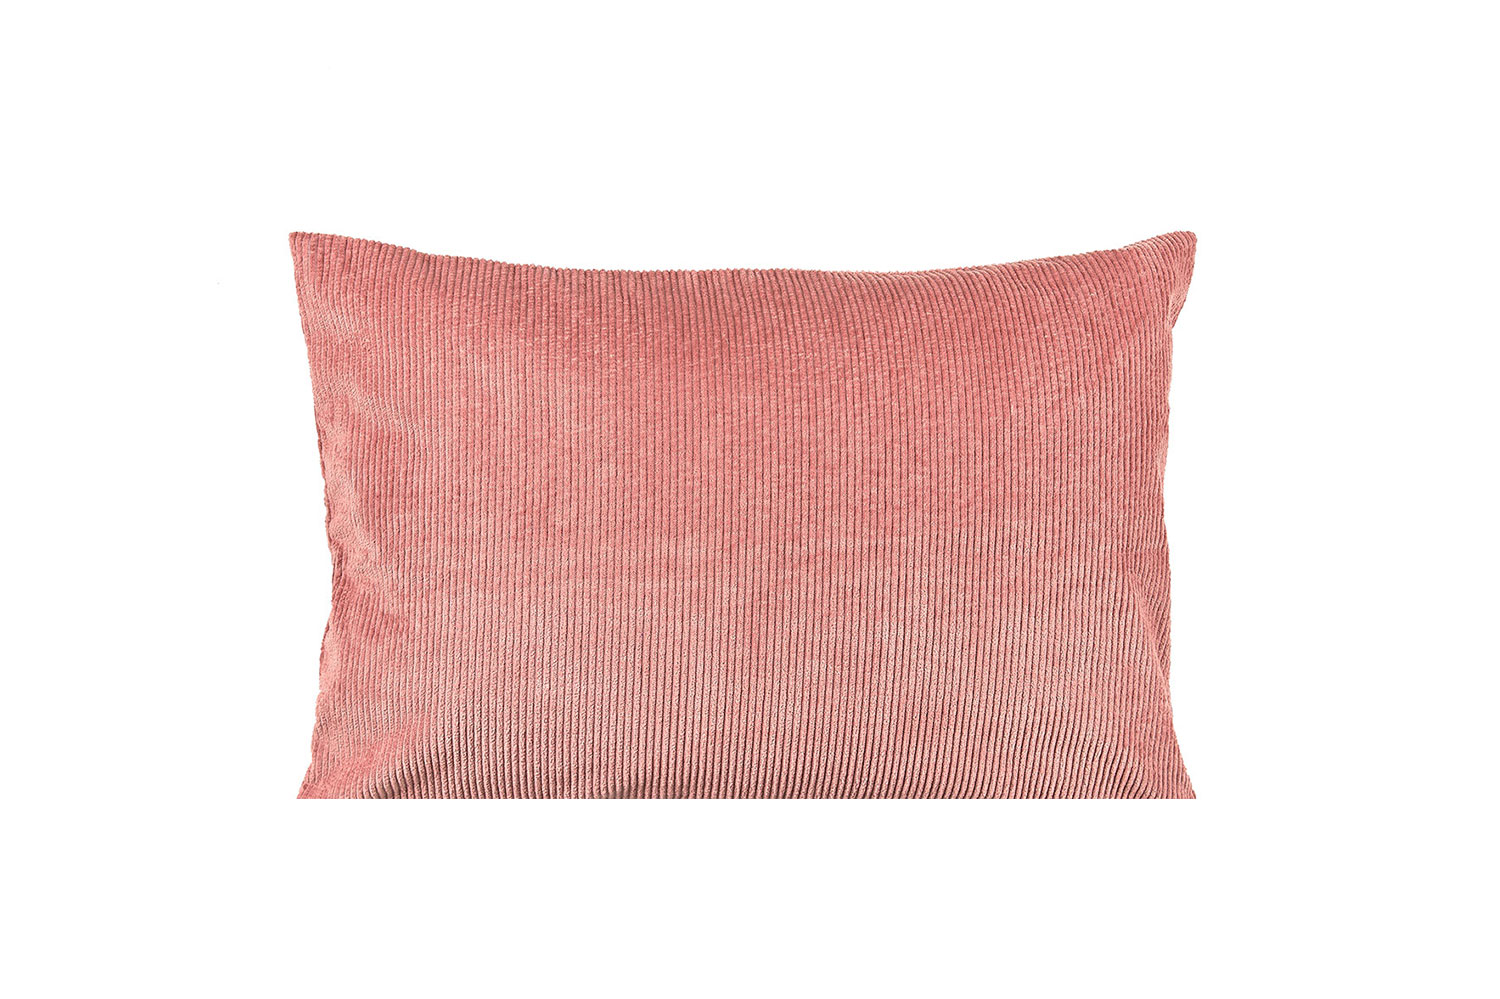 
Striped cotton Cushion